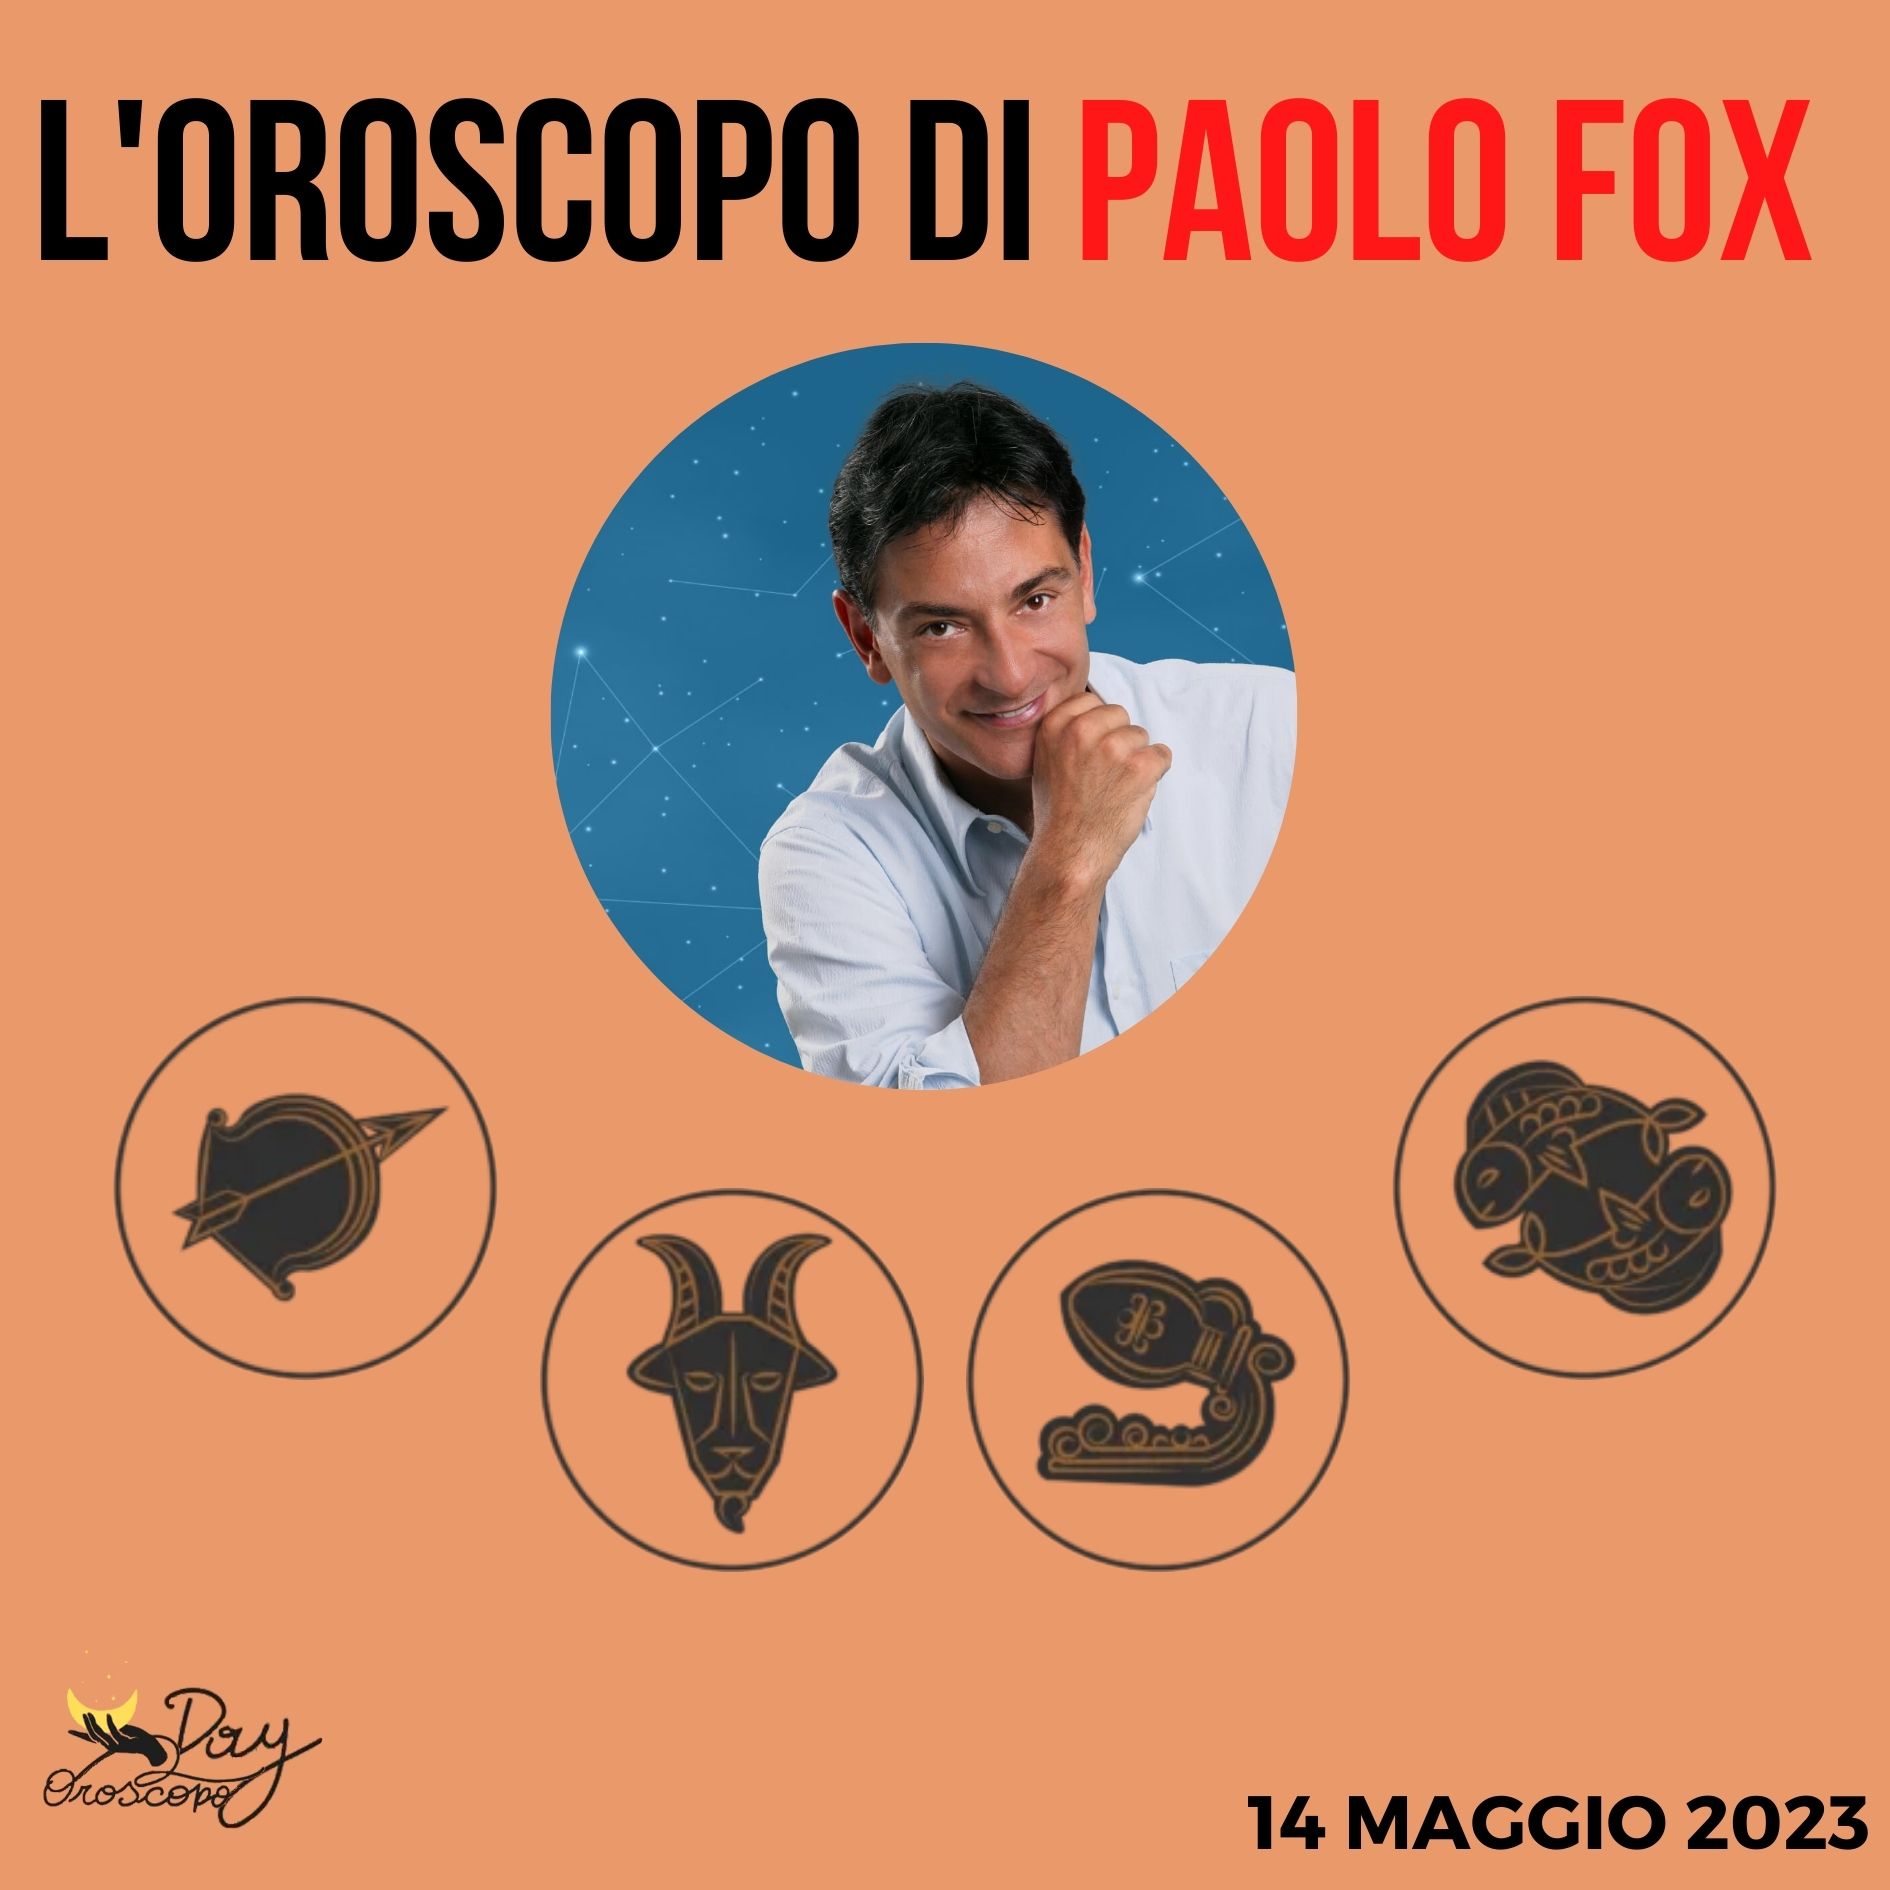 Oroscopo oggi domani Paolo Fox 14 maggio Sagittario Capricorno Acquario Pesci